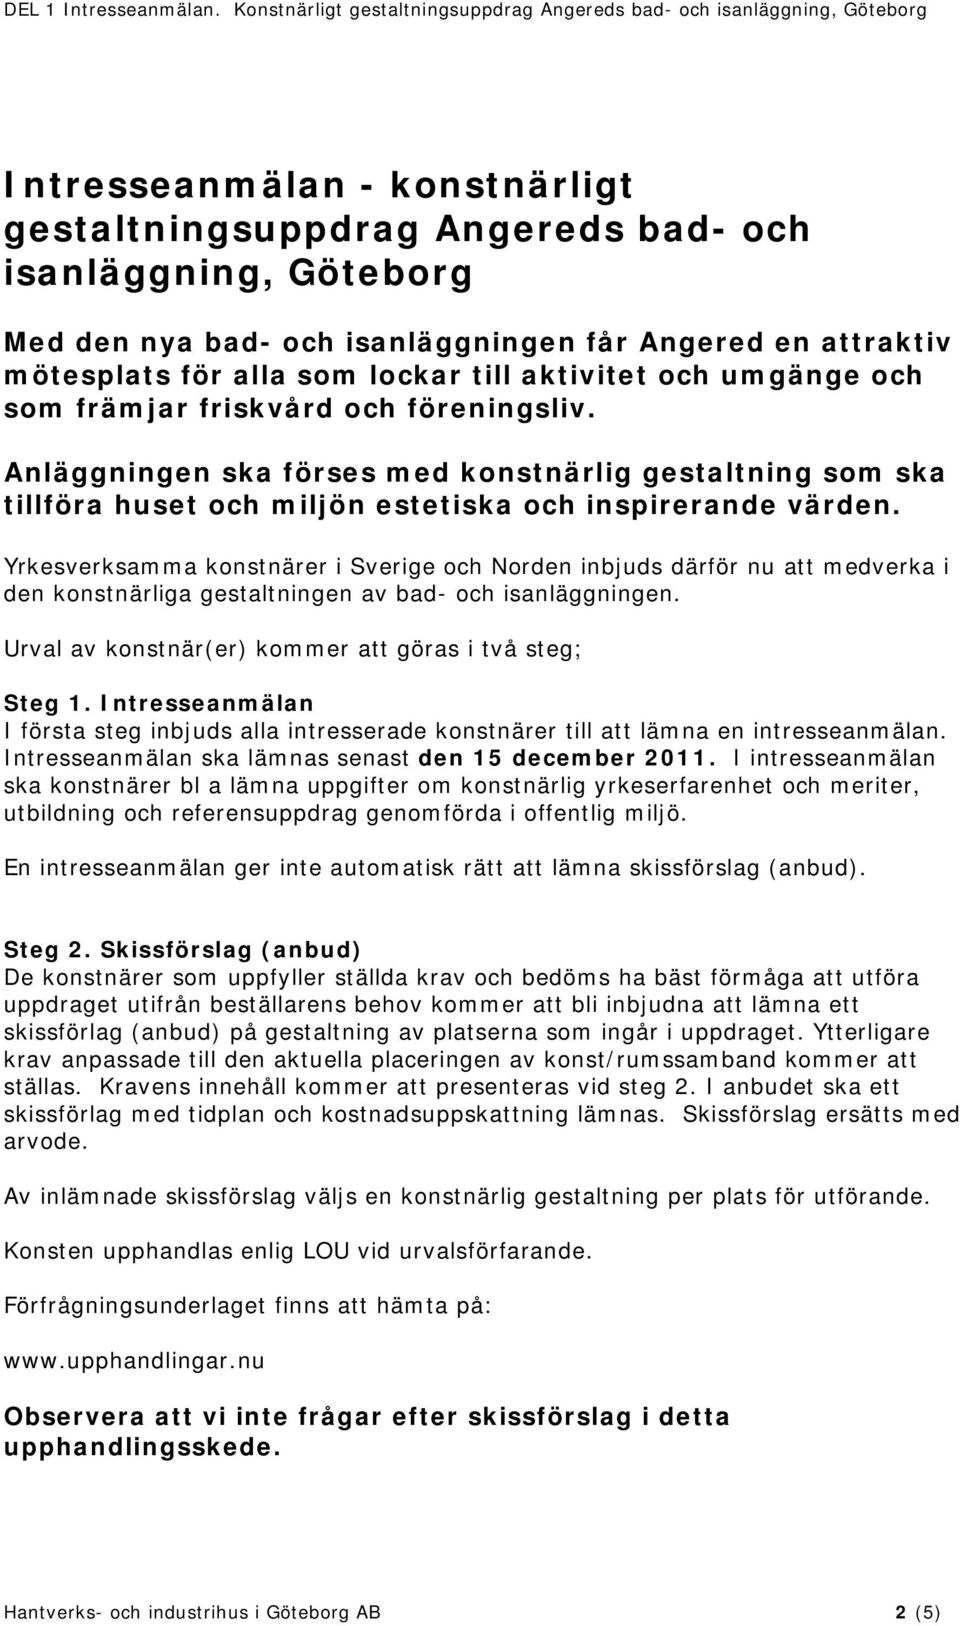 Yrkesverksamma konstnärer i Sverige och Norden inbjuds därför nu att medverka i den konstnärliga gestaltningen av bad- och isanläggningen. Urval av konstnär(er) kommer att göras i två steg; Steg 1.